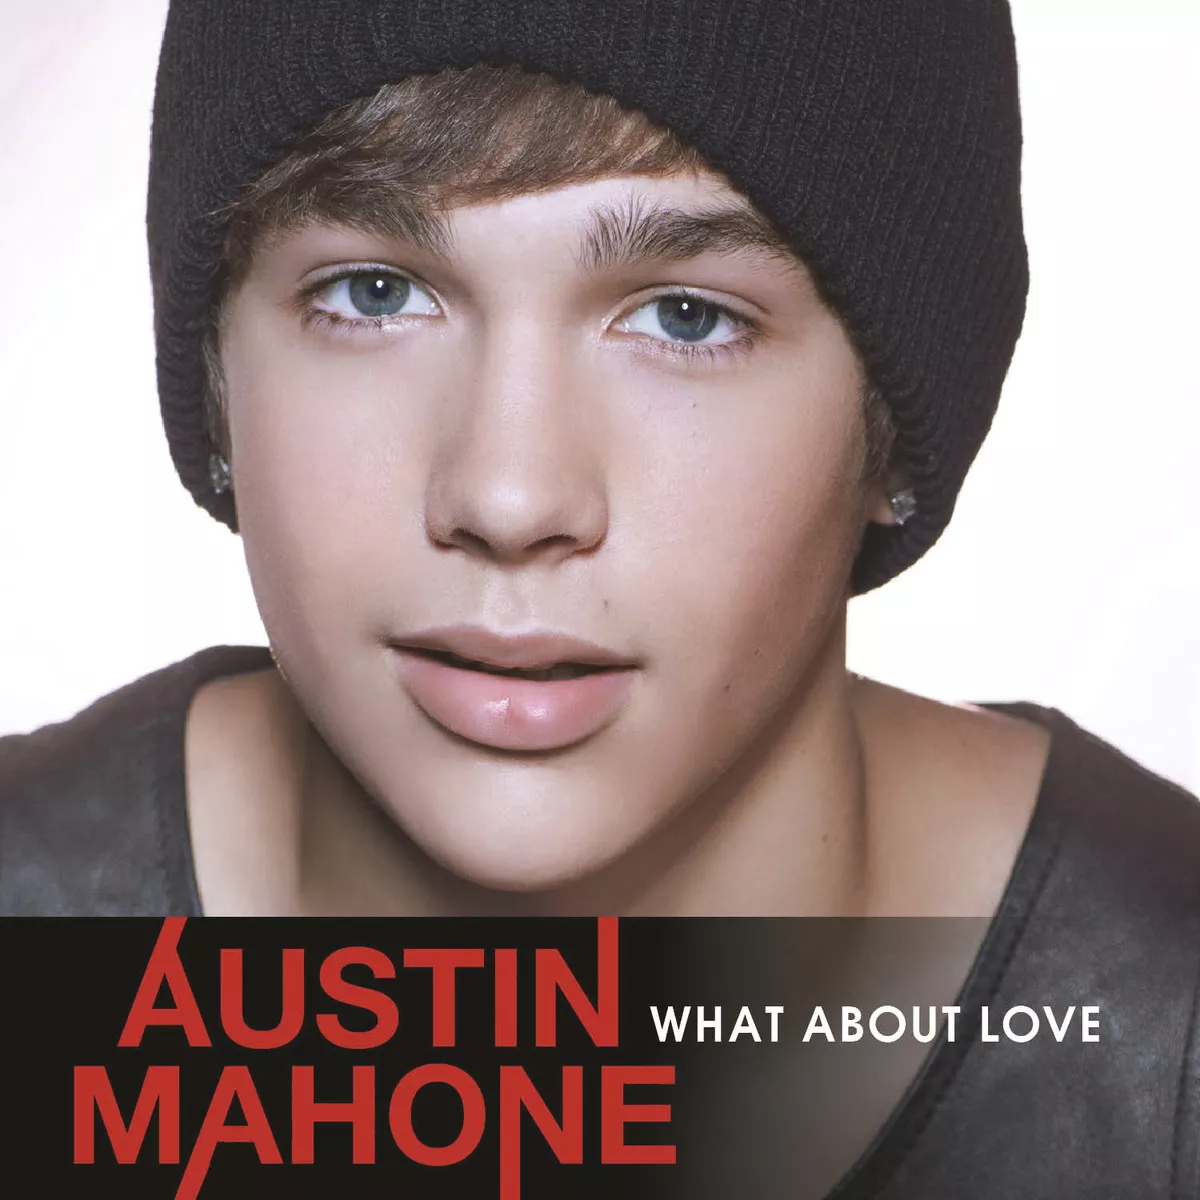 Escucha "What About Love" de Austin Mahone (NUEVO SINGLE)